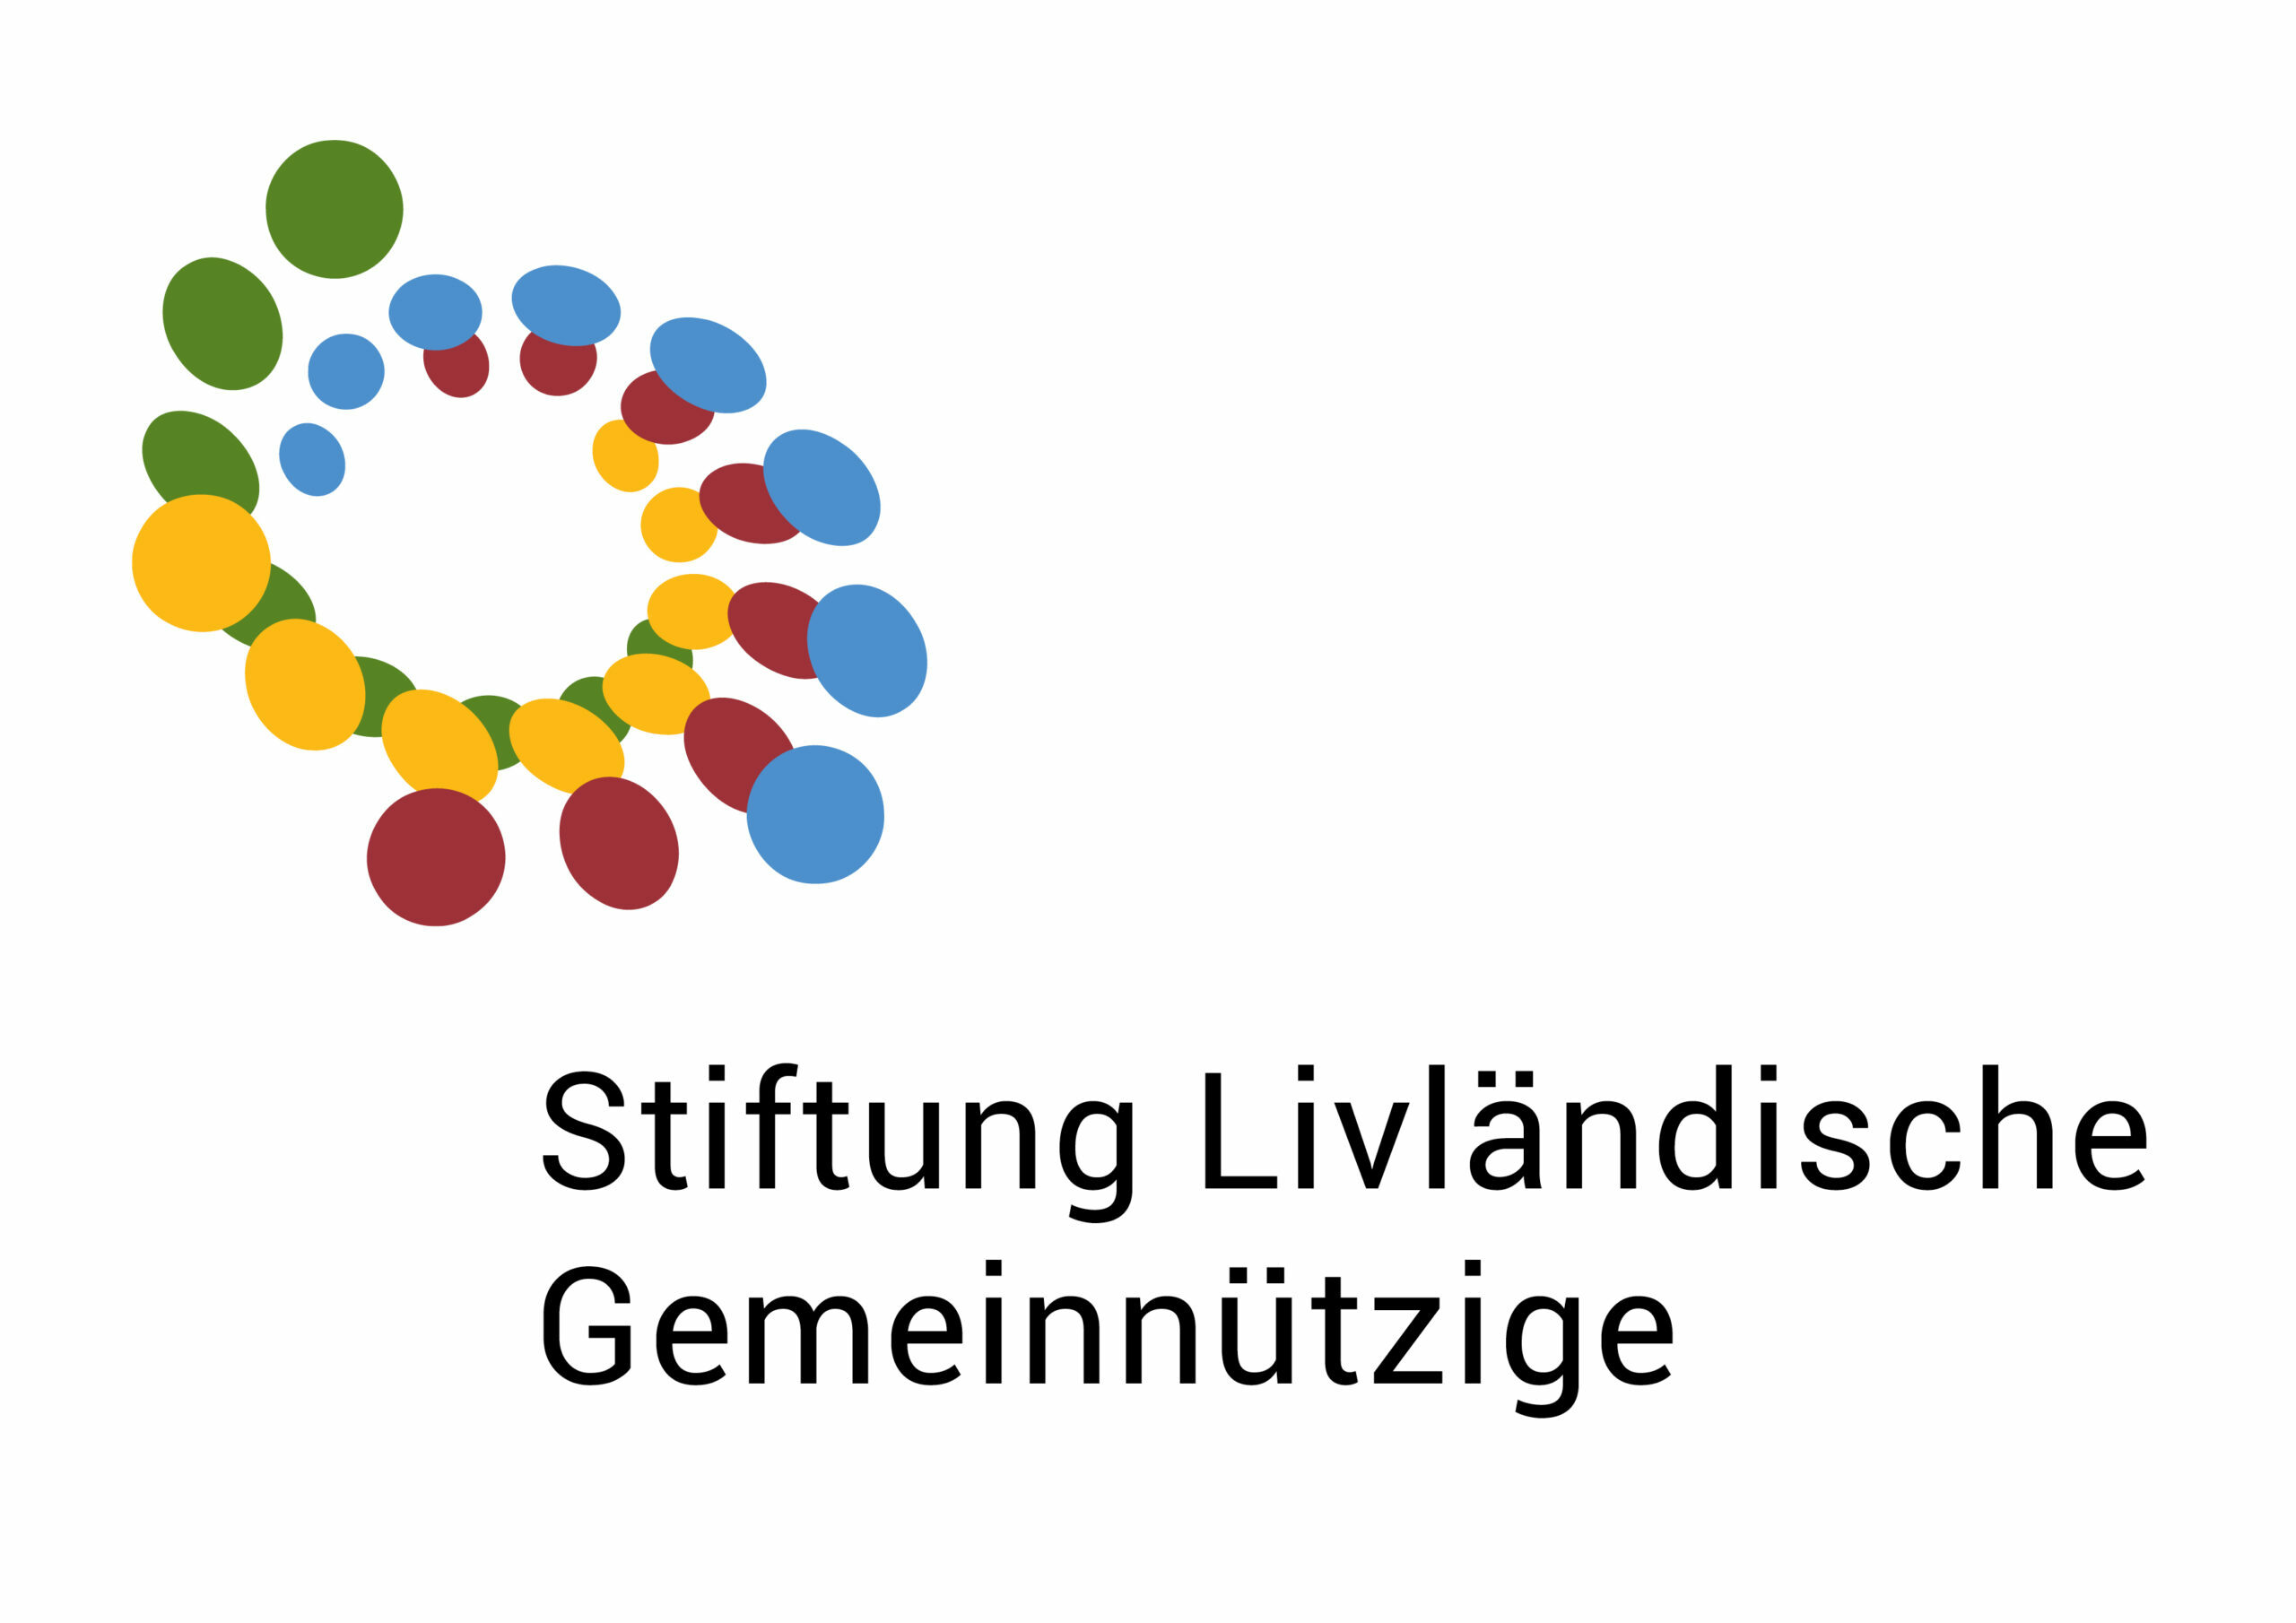 Stiftung Livländische Gemeinnützige